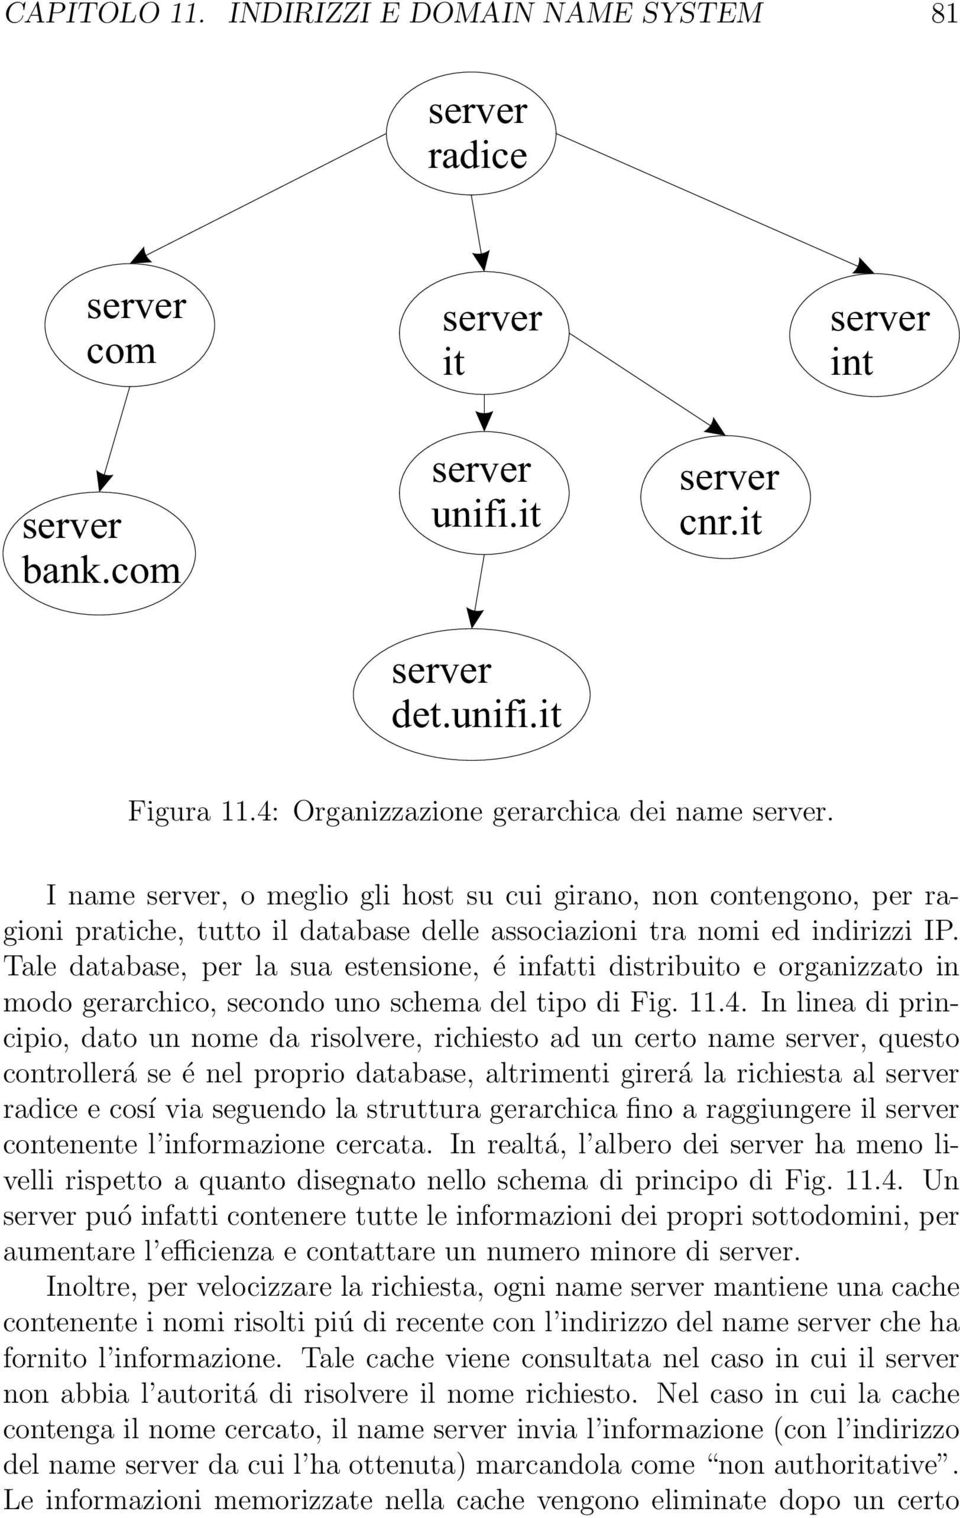 Tale database, per la sua estensione, é infatti distribuito e organizzato in modo gerarchico, secondo uno schema del tipo di Fig. 11.4.